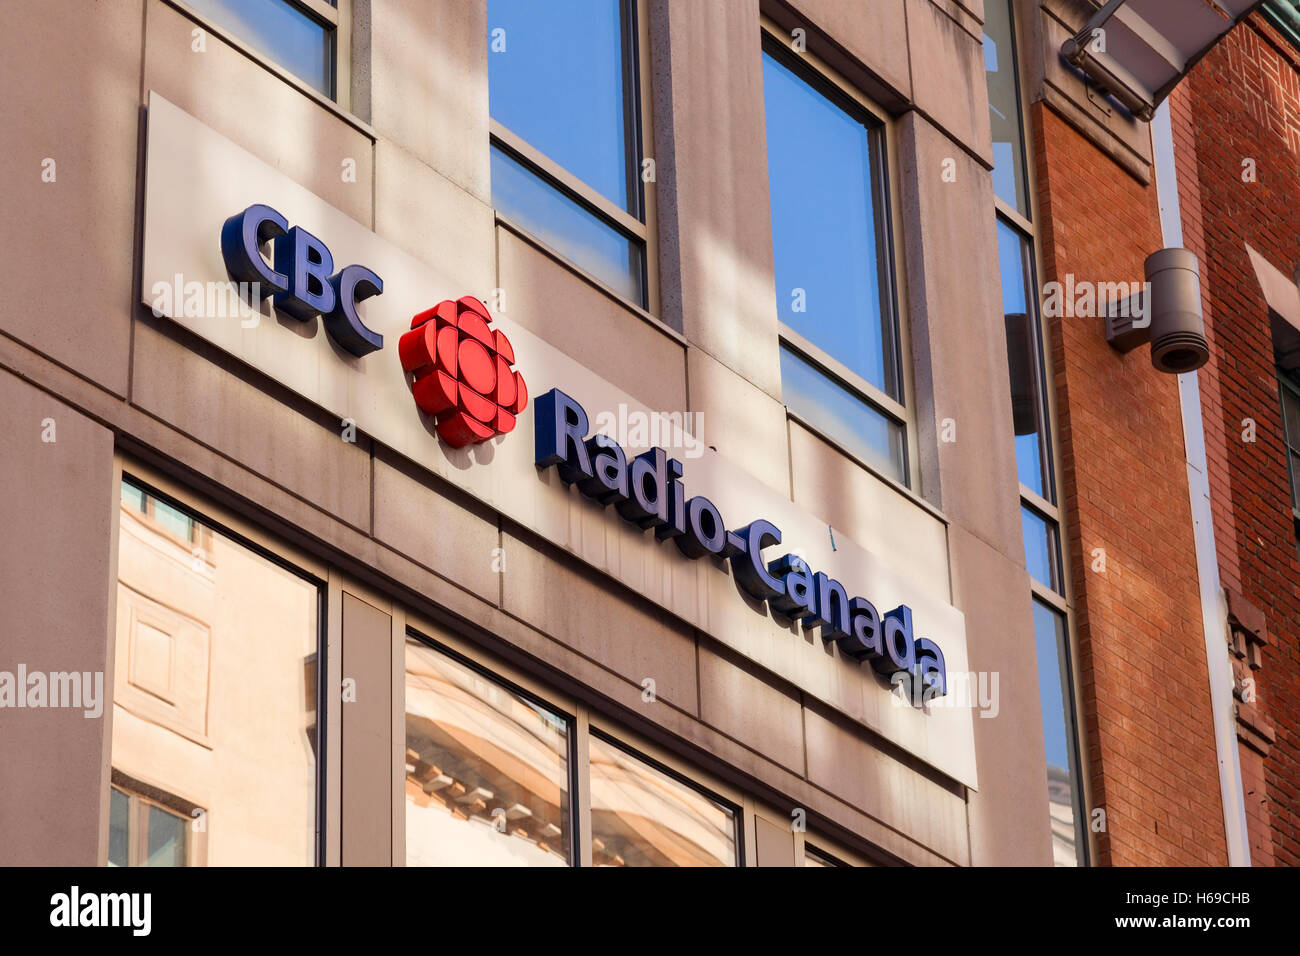 Cbc radio canada Banque de photographies et d'images à haute résolution -  Alamy